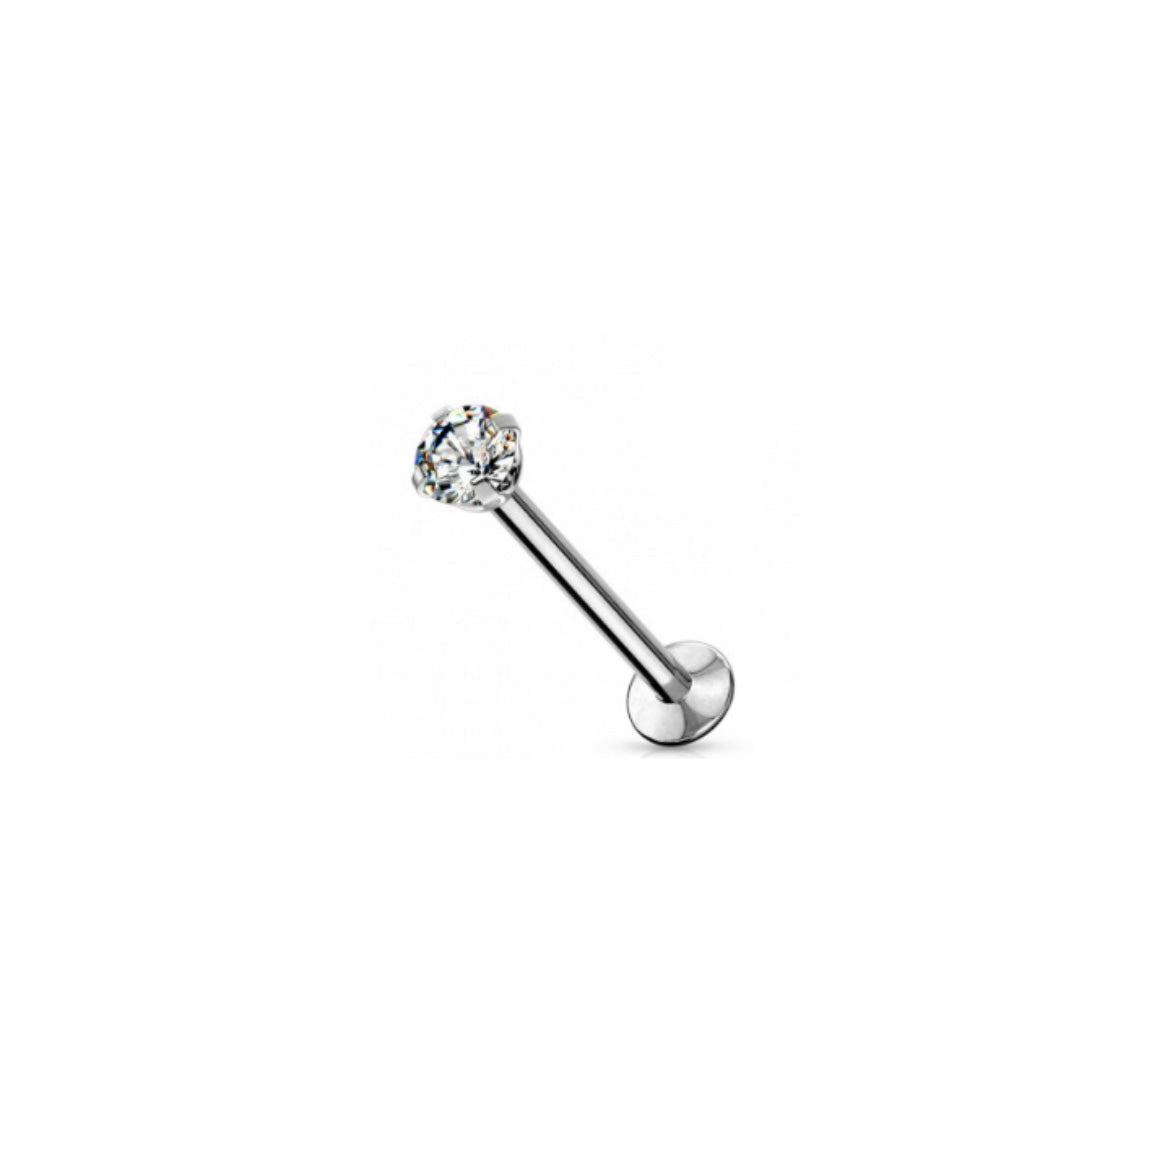 The Tania piercing - ASTM F136 titanium labret 